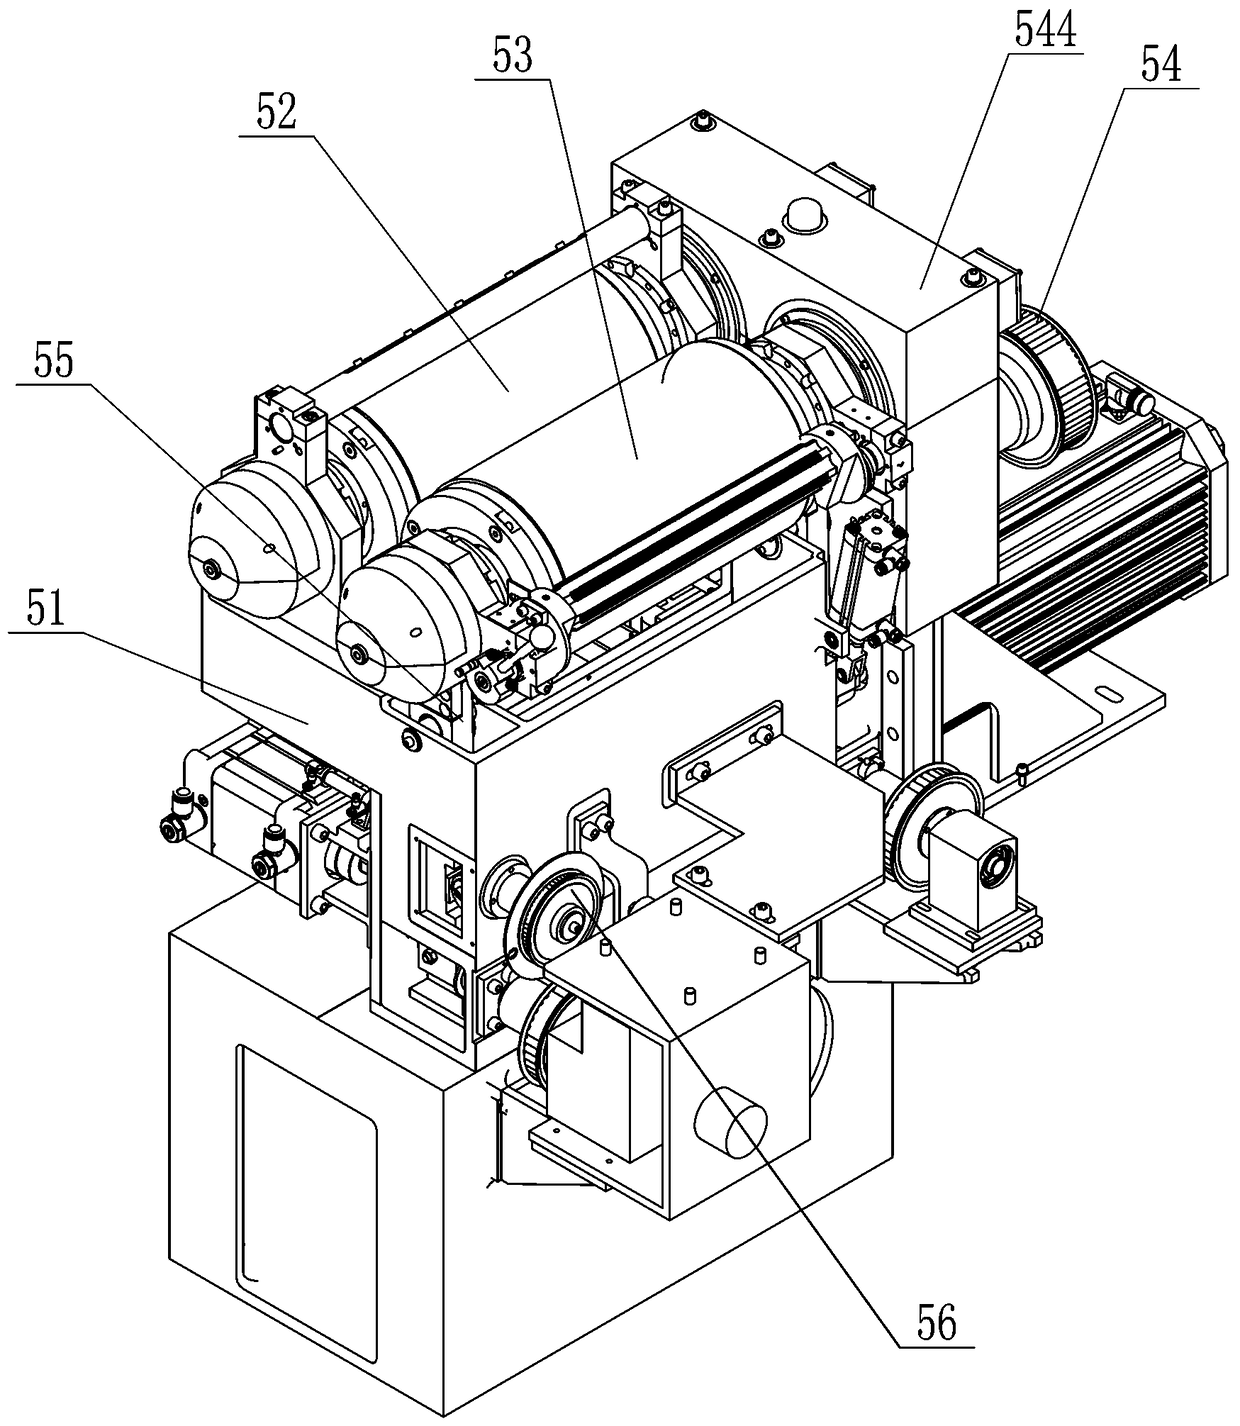 Sheet PLA composite press cutting machine